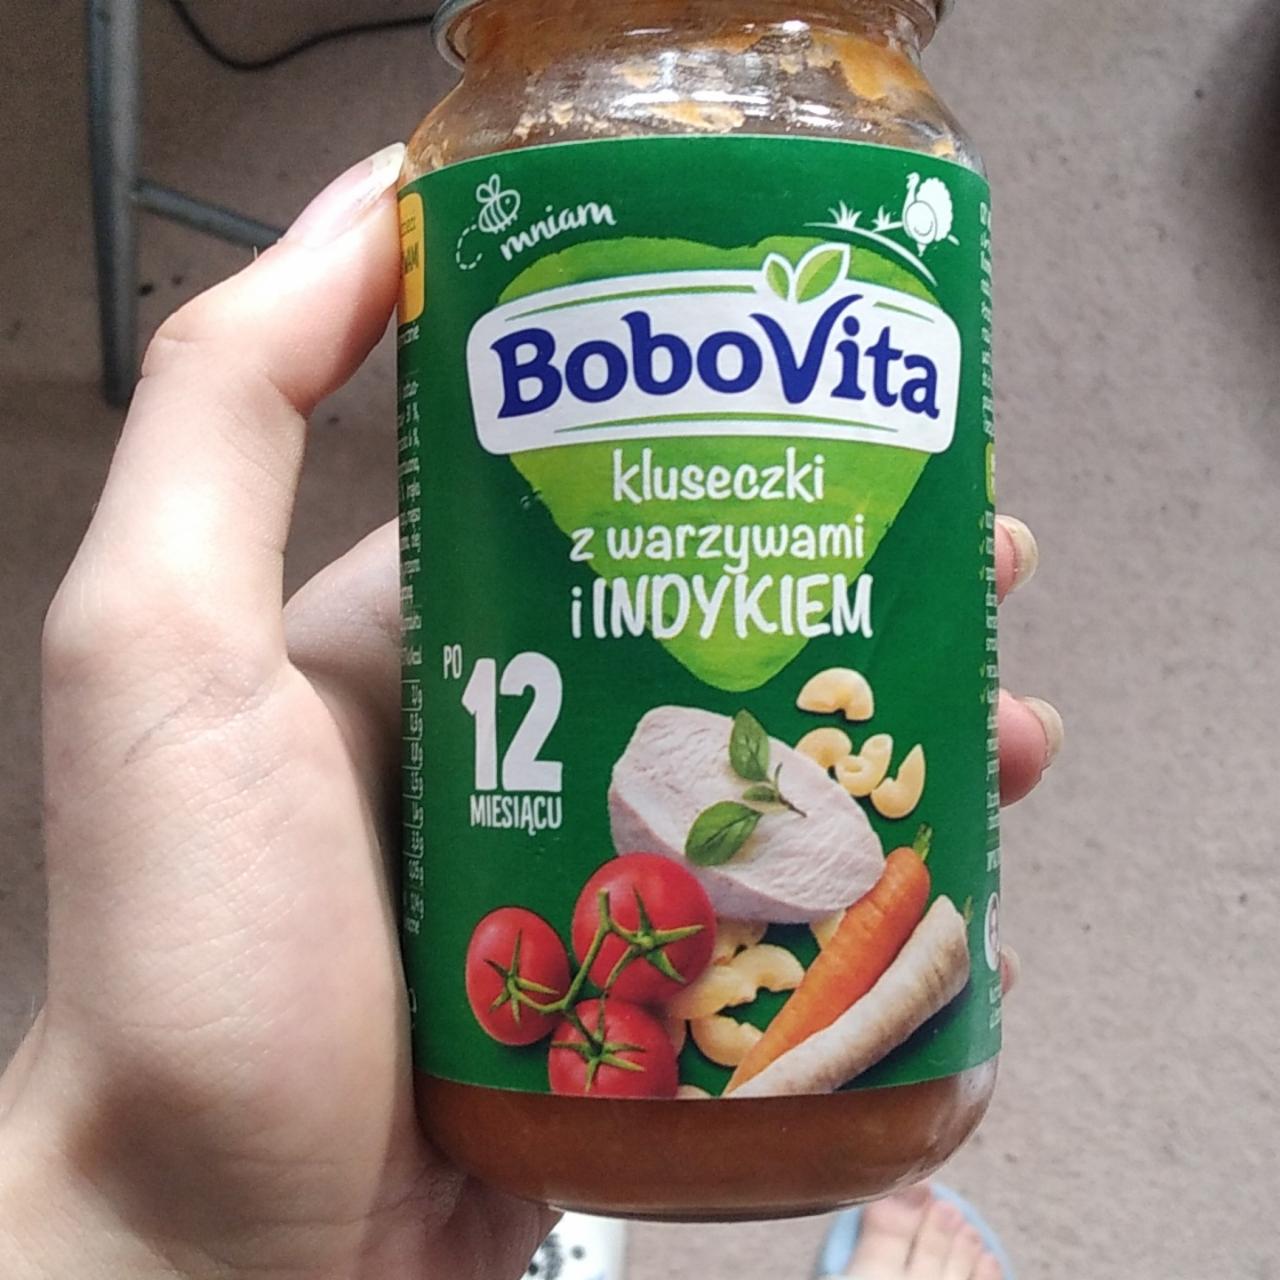 Zdjęcia - BoboVita Kluseczki z warzywami i indykiem po 12 miesiącu 250 g